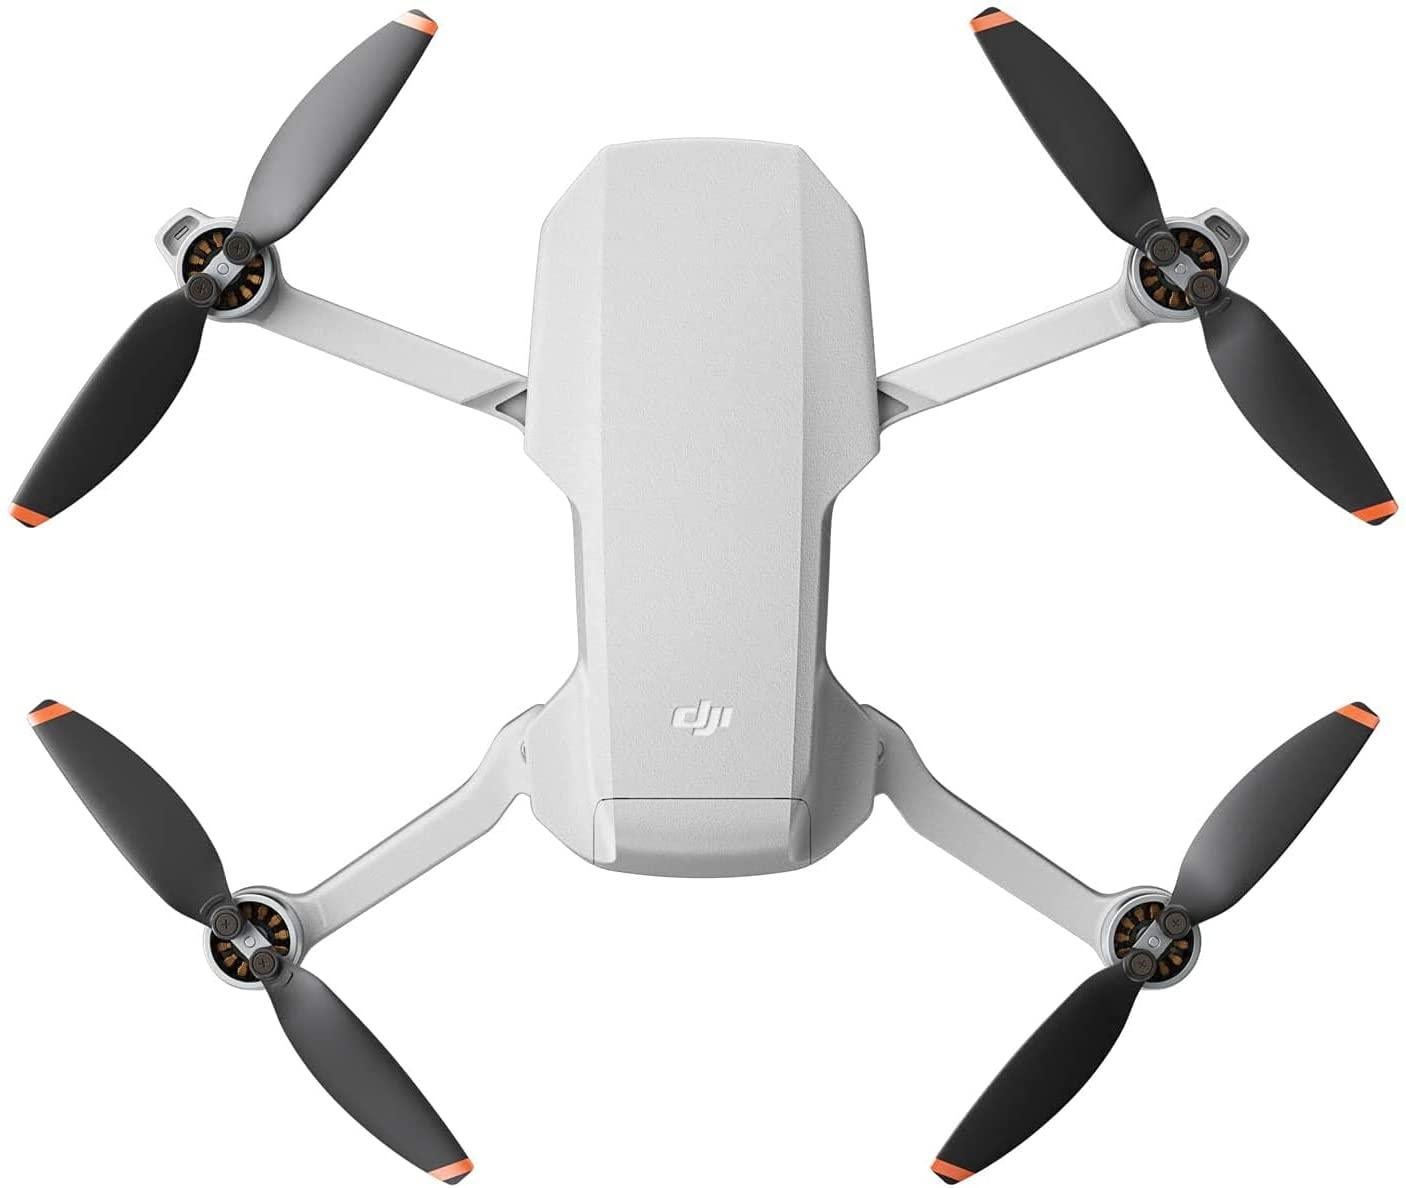 DJI Mini 2 Camera Drone